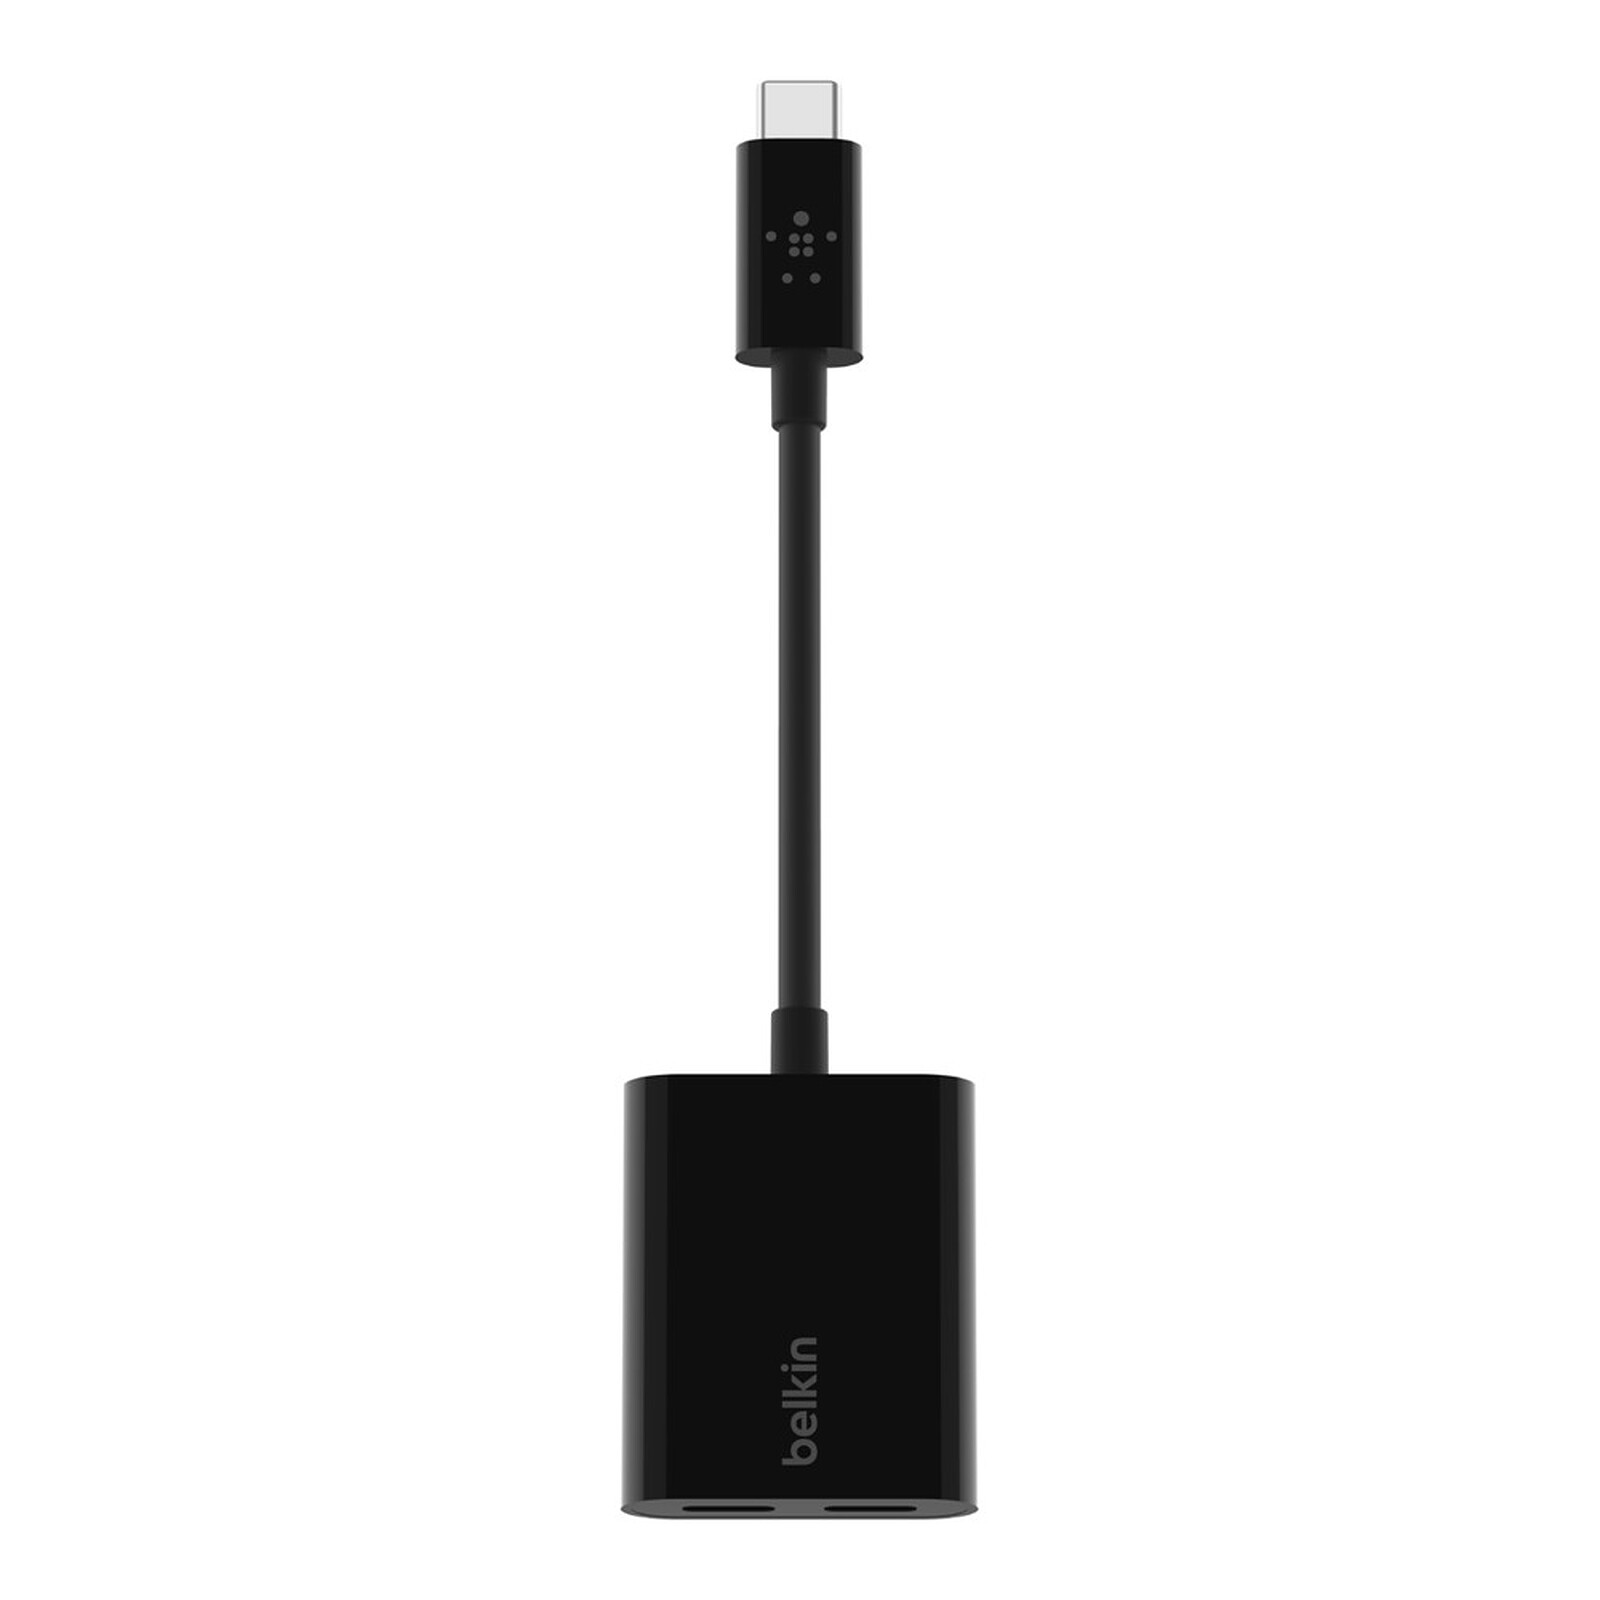 Belkin Chargeur USB-C 65W max pour PC, MacBook et Smartphone - Chargeur  téléphone - Garantie 3 ans LDLC